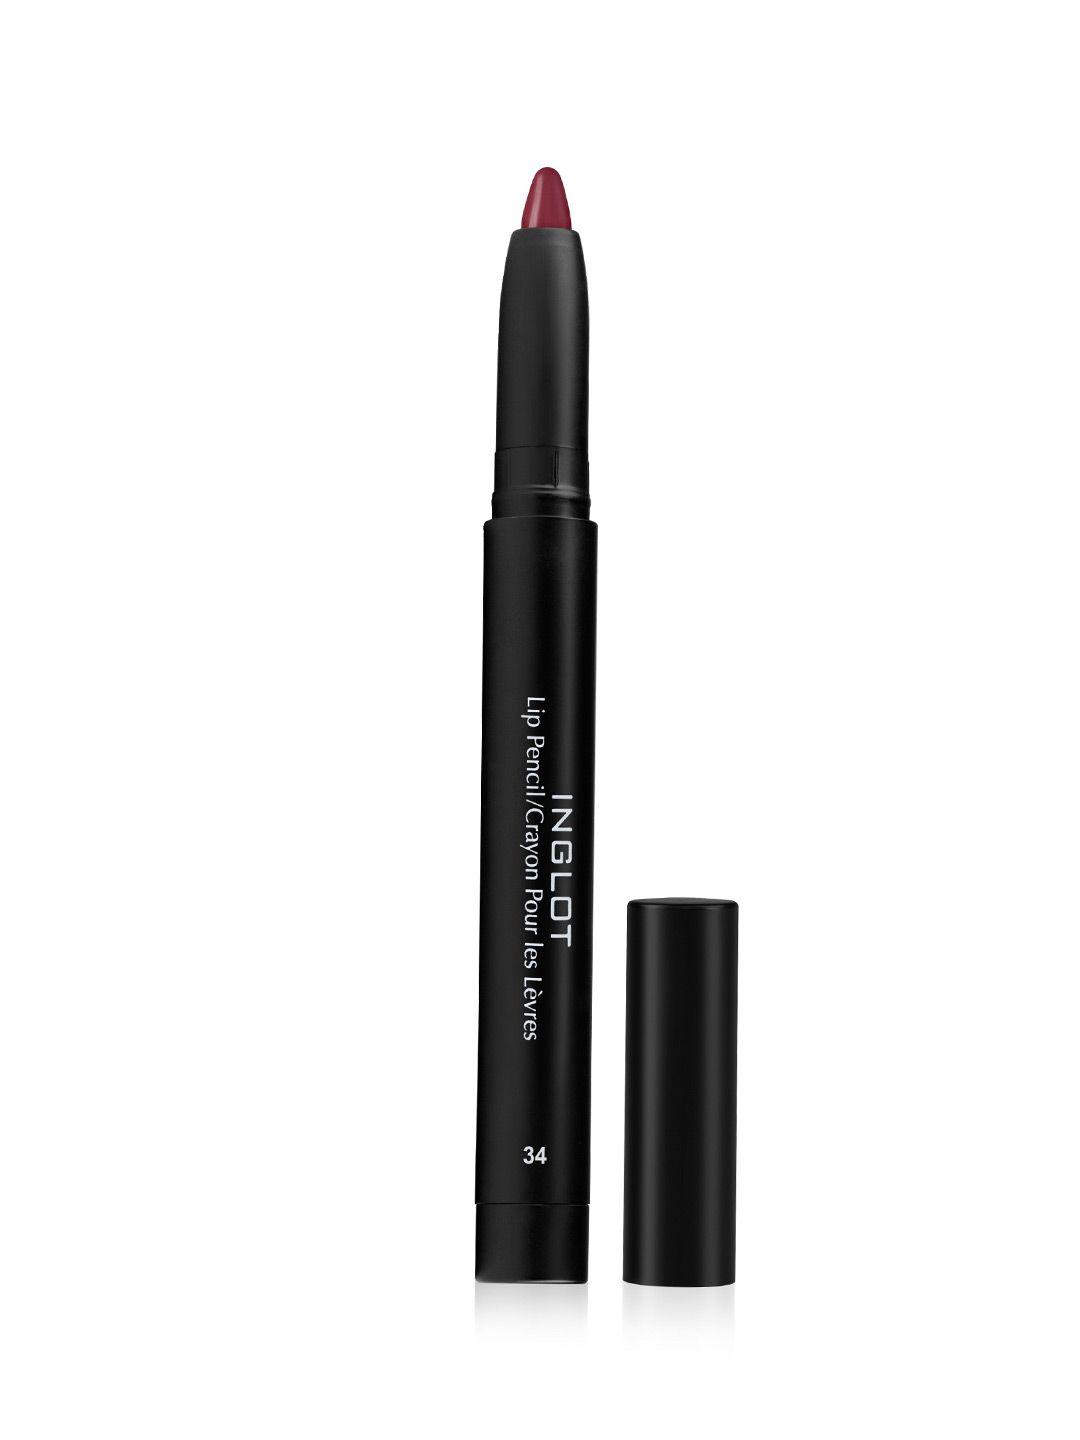 inglot amc matte lip pencil crayon with sharpener - 34